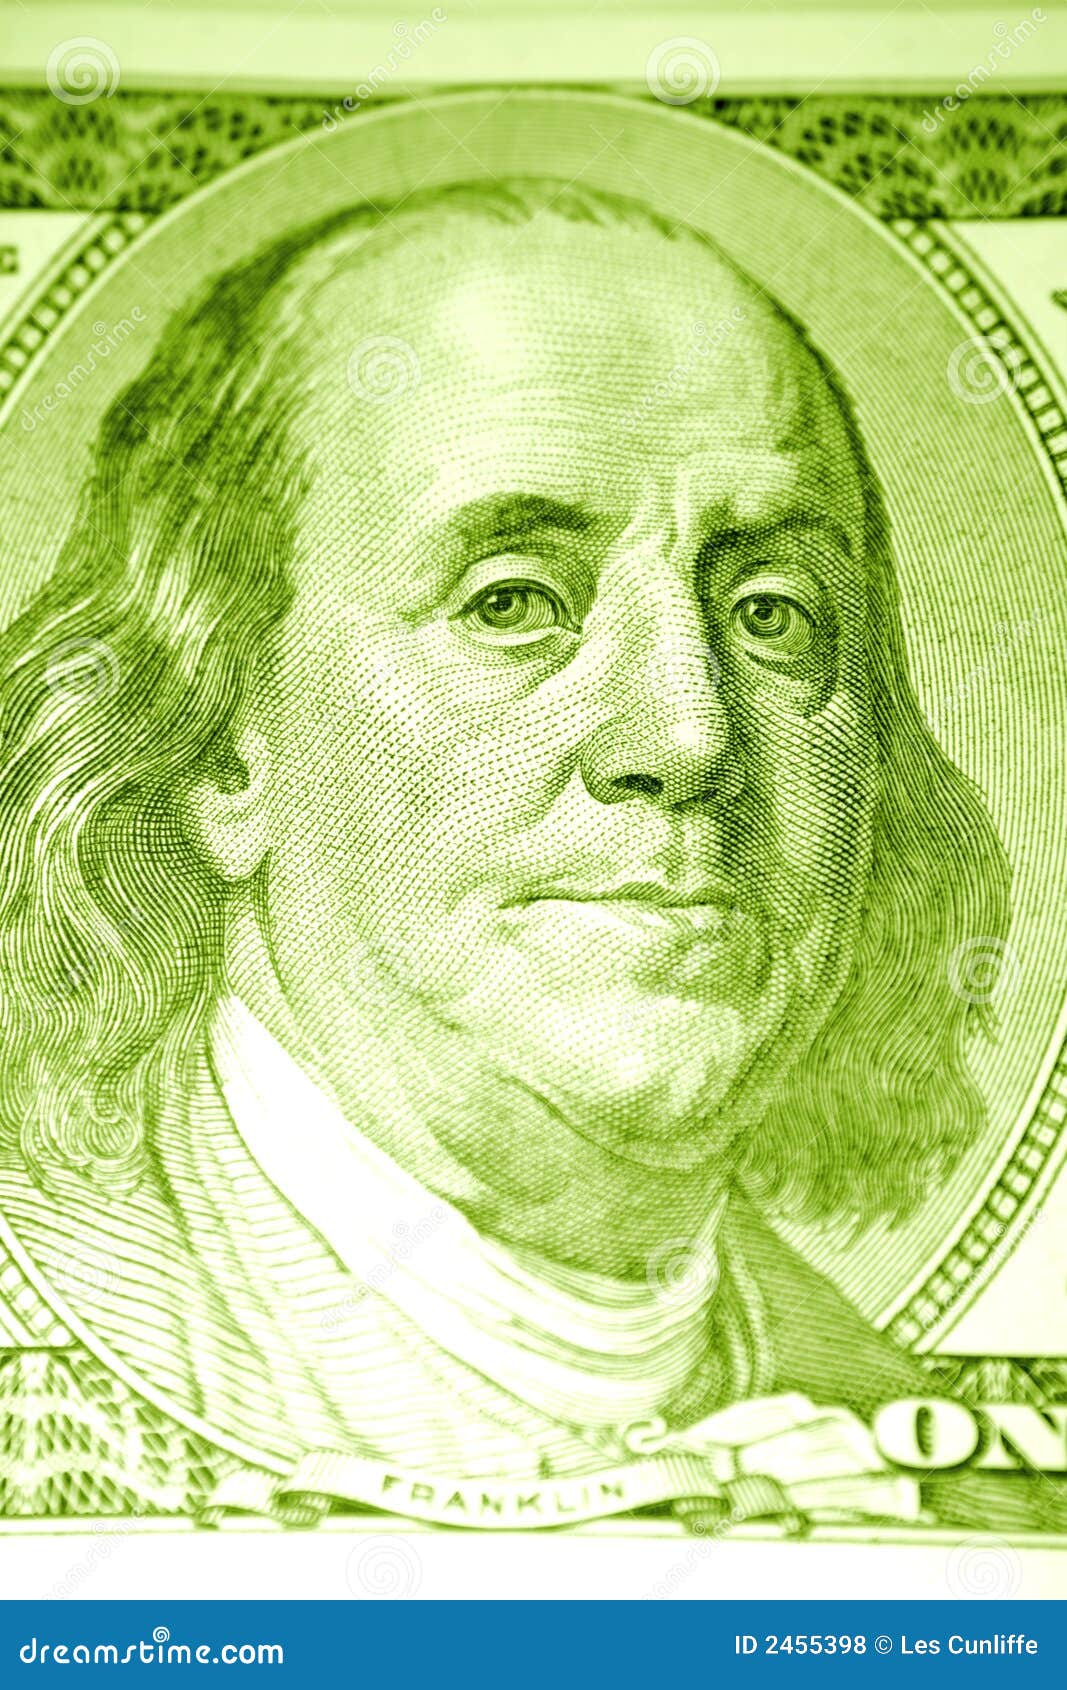 Франклин на какой купюре. Бенджамин Франклин 100$. Бенджамин Франклин на 100 долларах. Франклин 100 долларов. Бен Франклин на купюре.